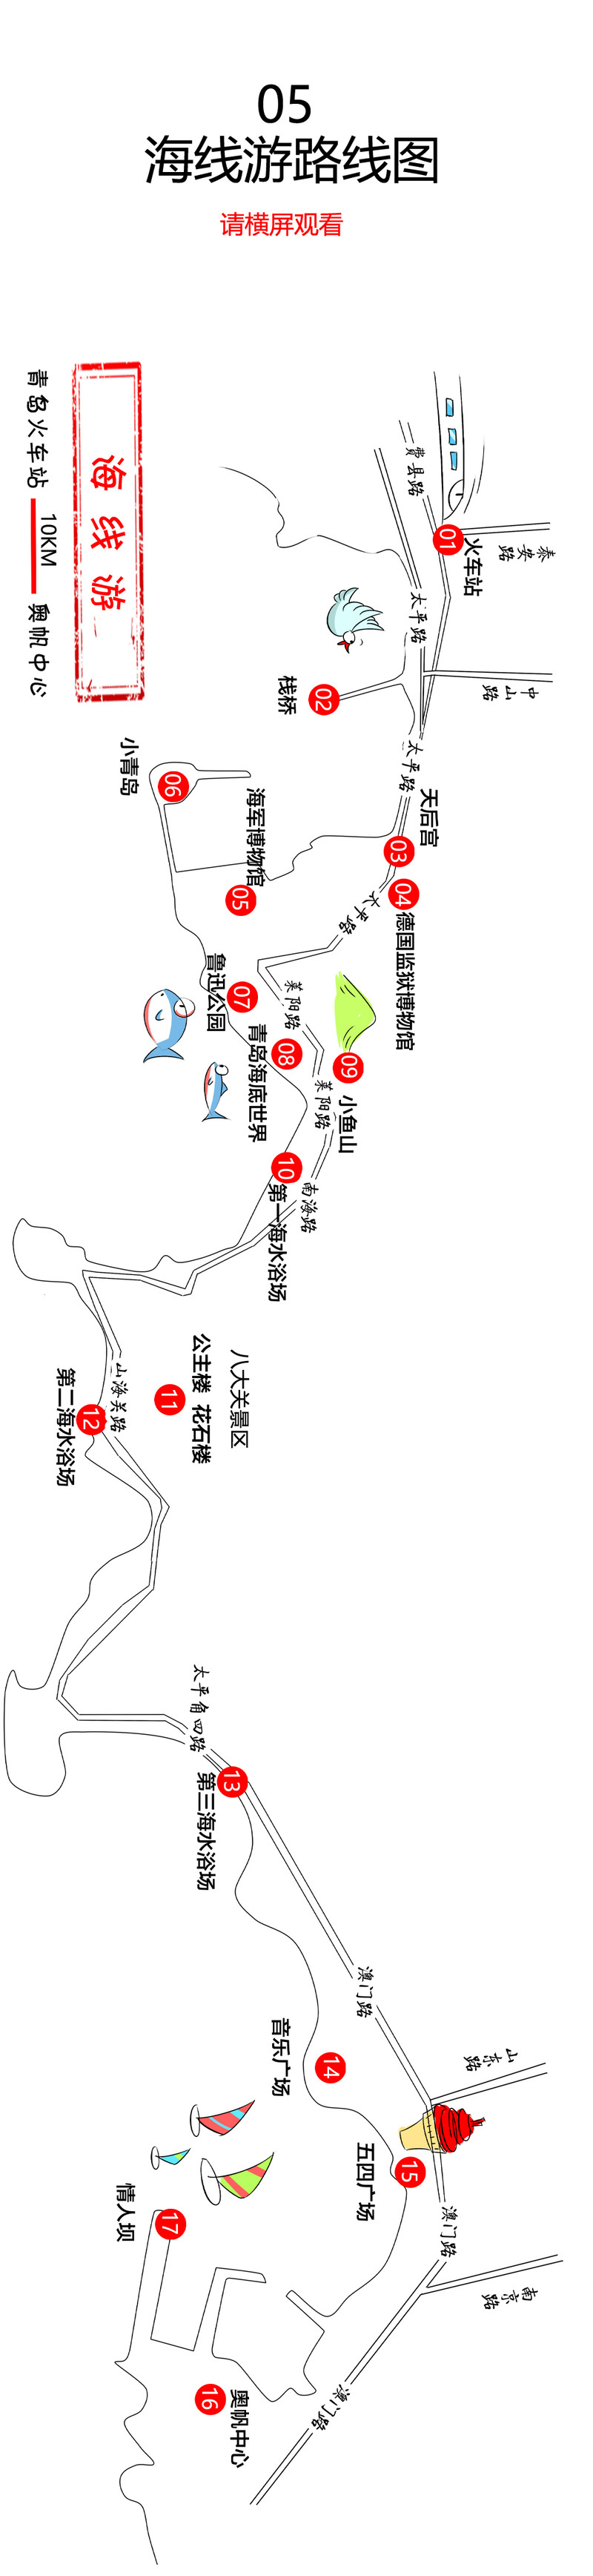 青岛旅游路线图,自由行攻略